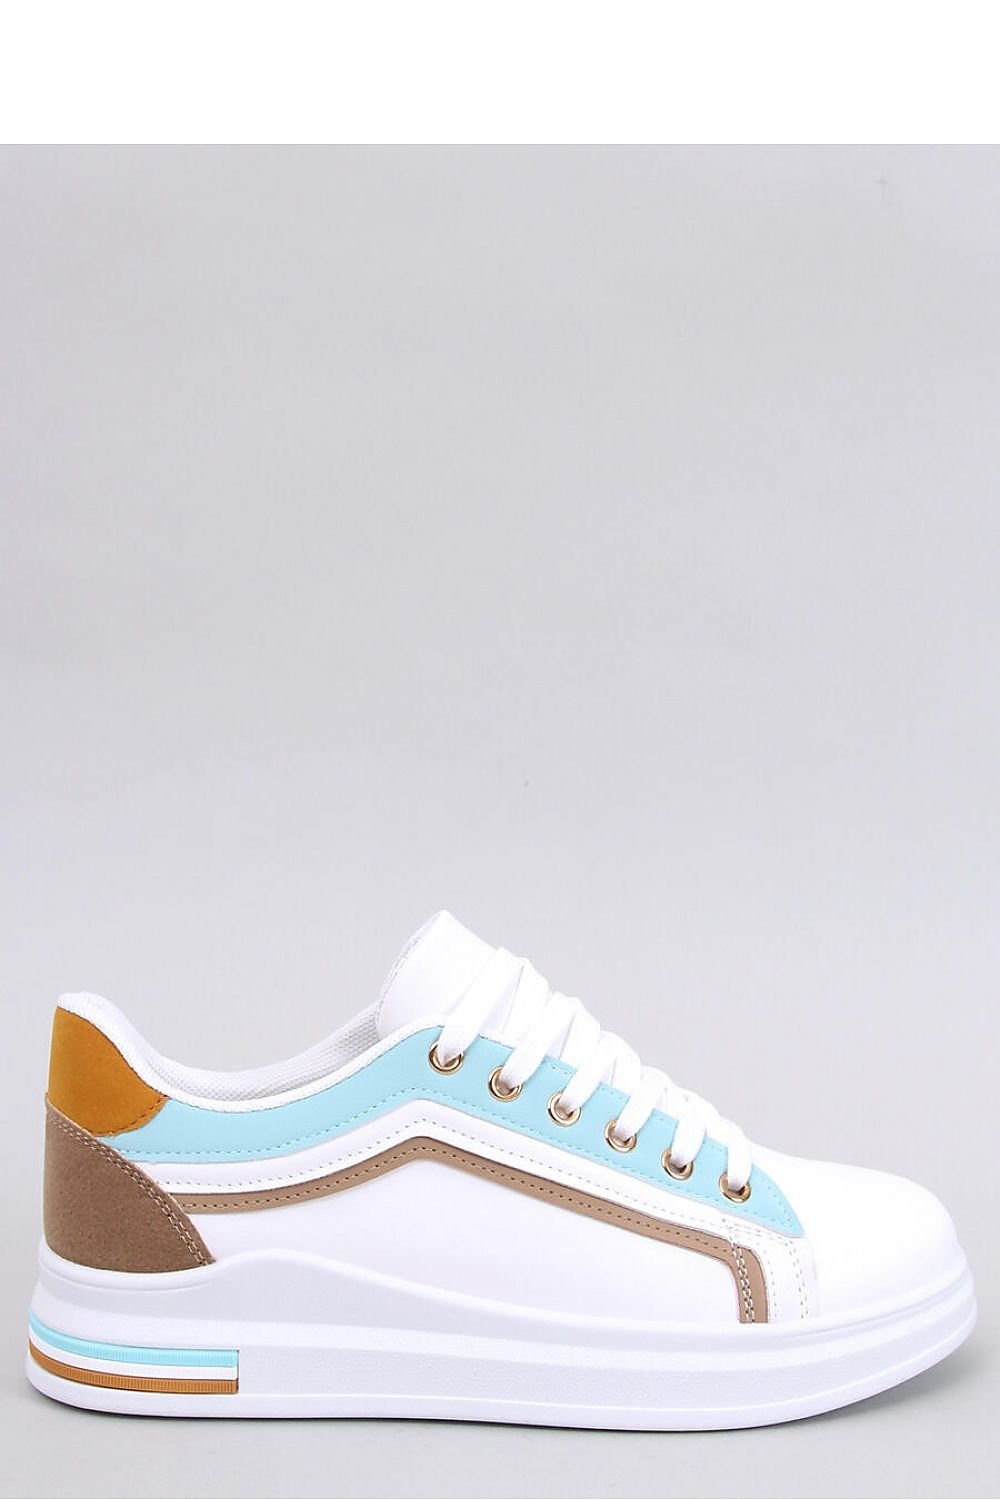 Αθλητικά Sneakers Γυναικεία Παπούτσια λευκό - γαλάζιο